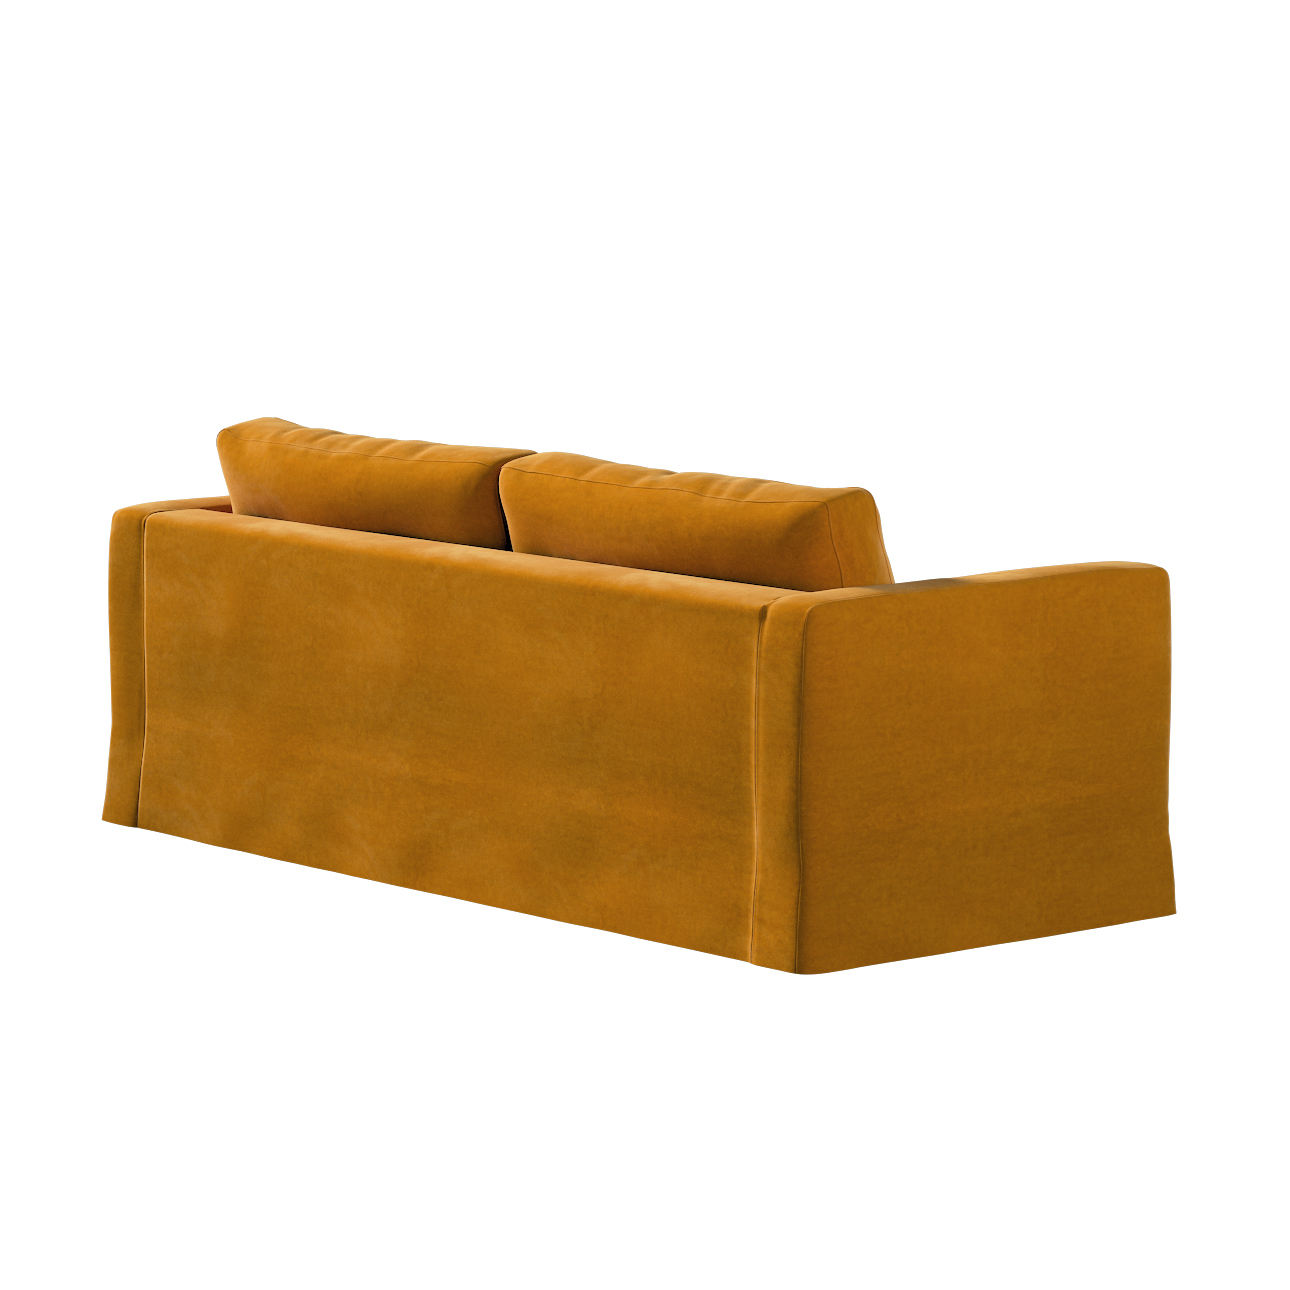 Bezug für Karlstad 3-Sitzer Sofa nicht ausklappbar, lang, honiggelb, Bezug günstig online kaufen